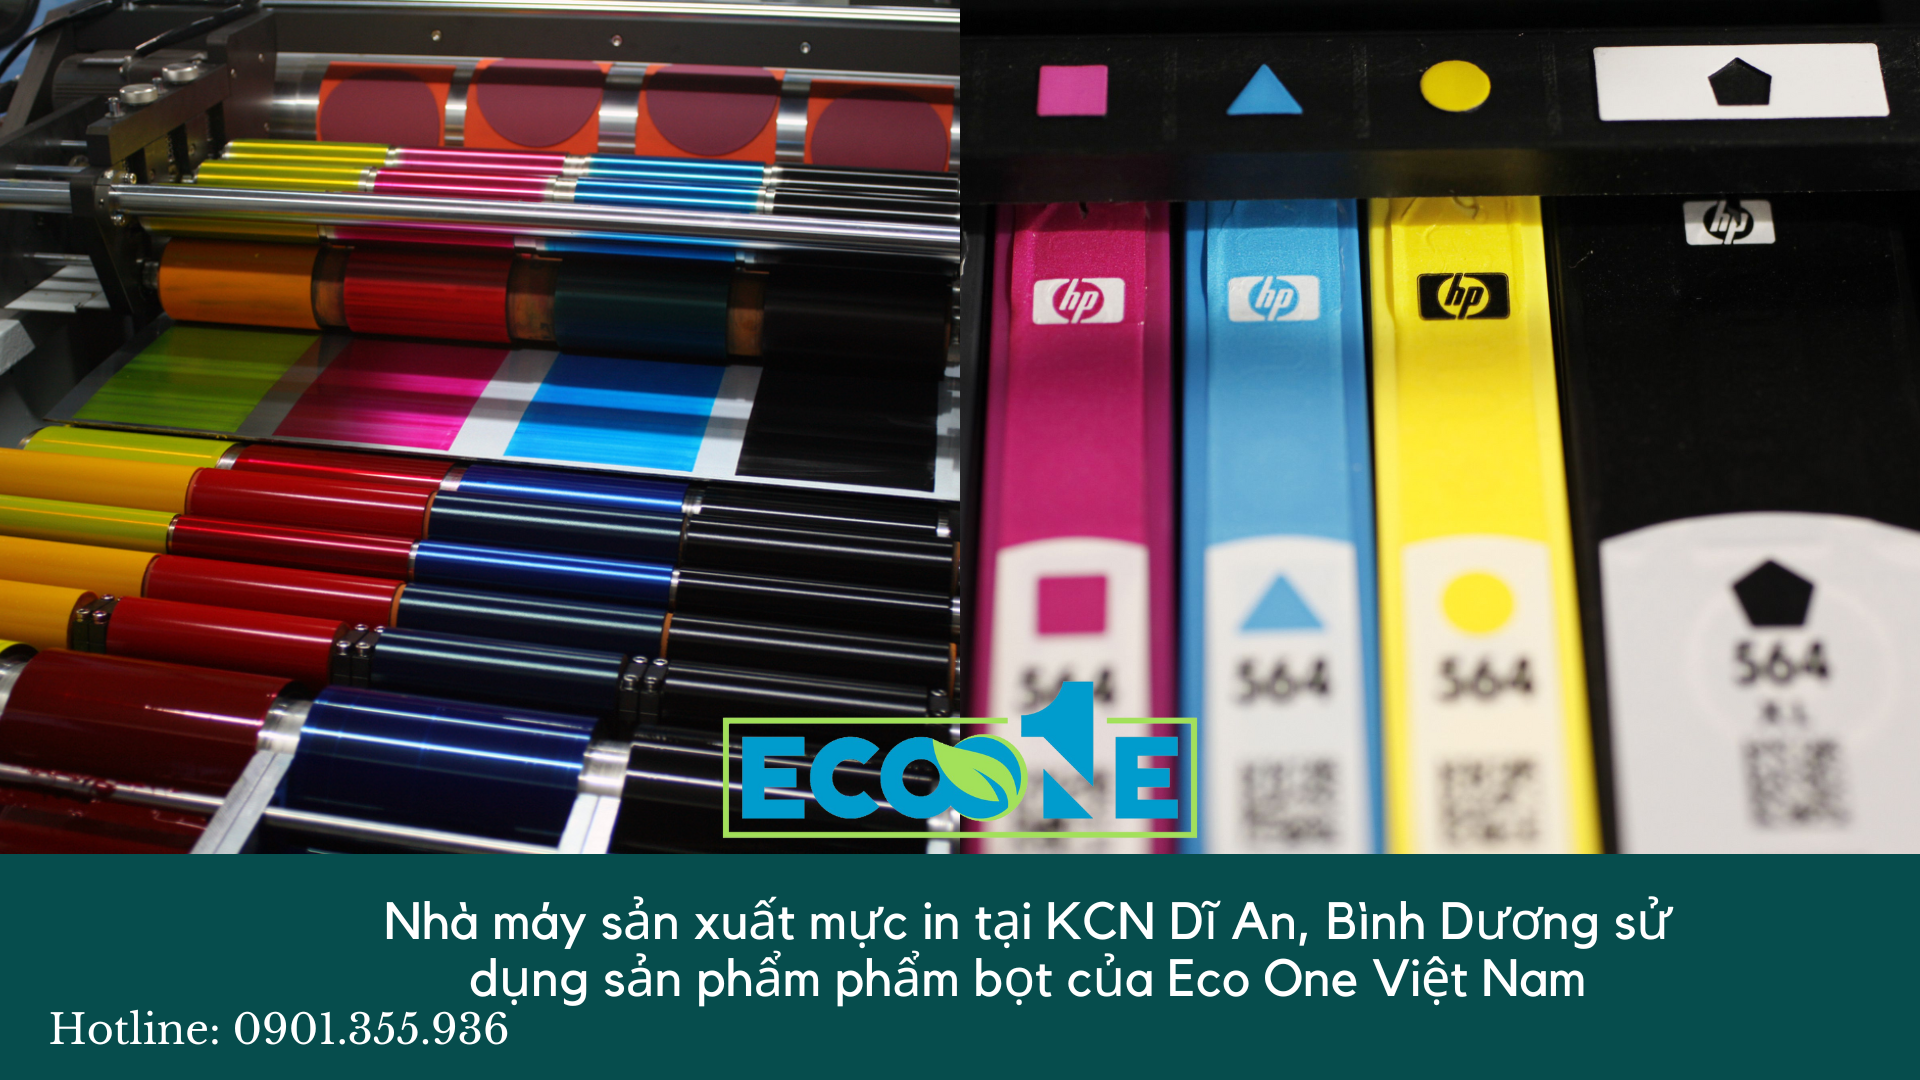 Nhà máy sản xuất mực in tại KCN Dĩ An, Bình Dương sử dụng sản phẩm phẩm bọt của Eco One Việt Nam